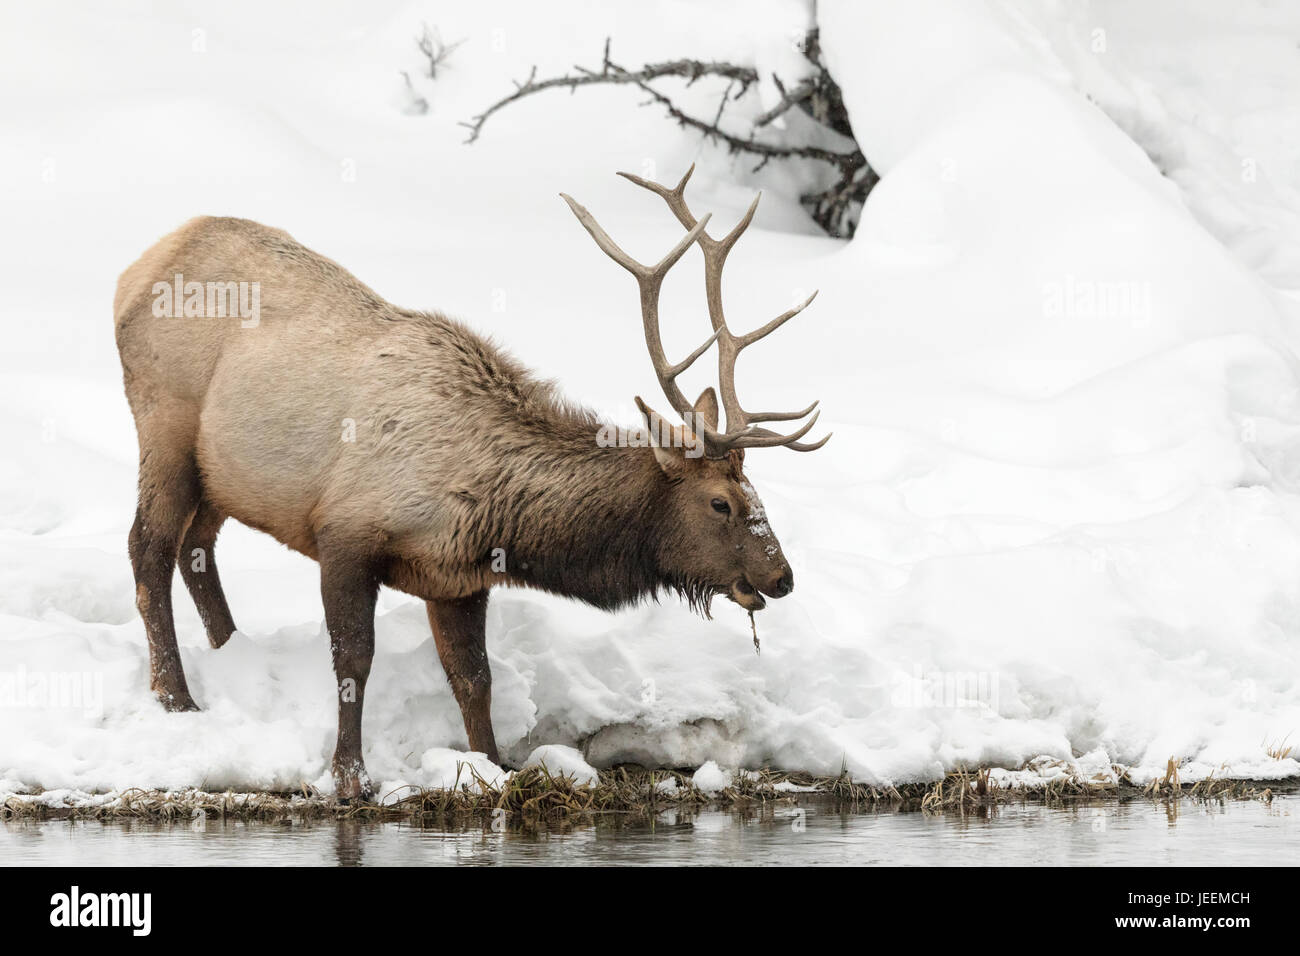 Elk Stock Photo